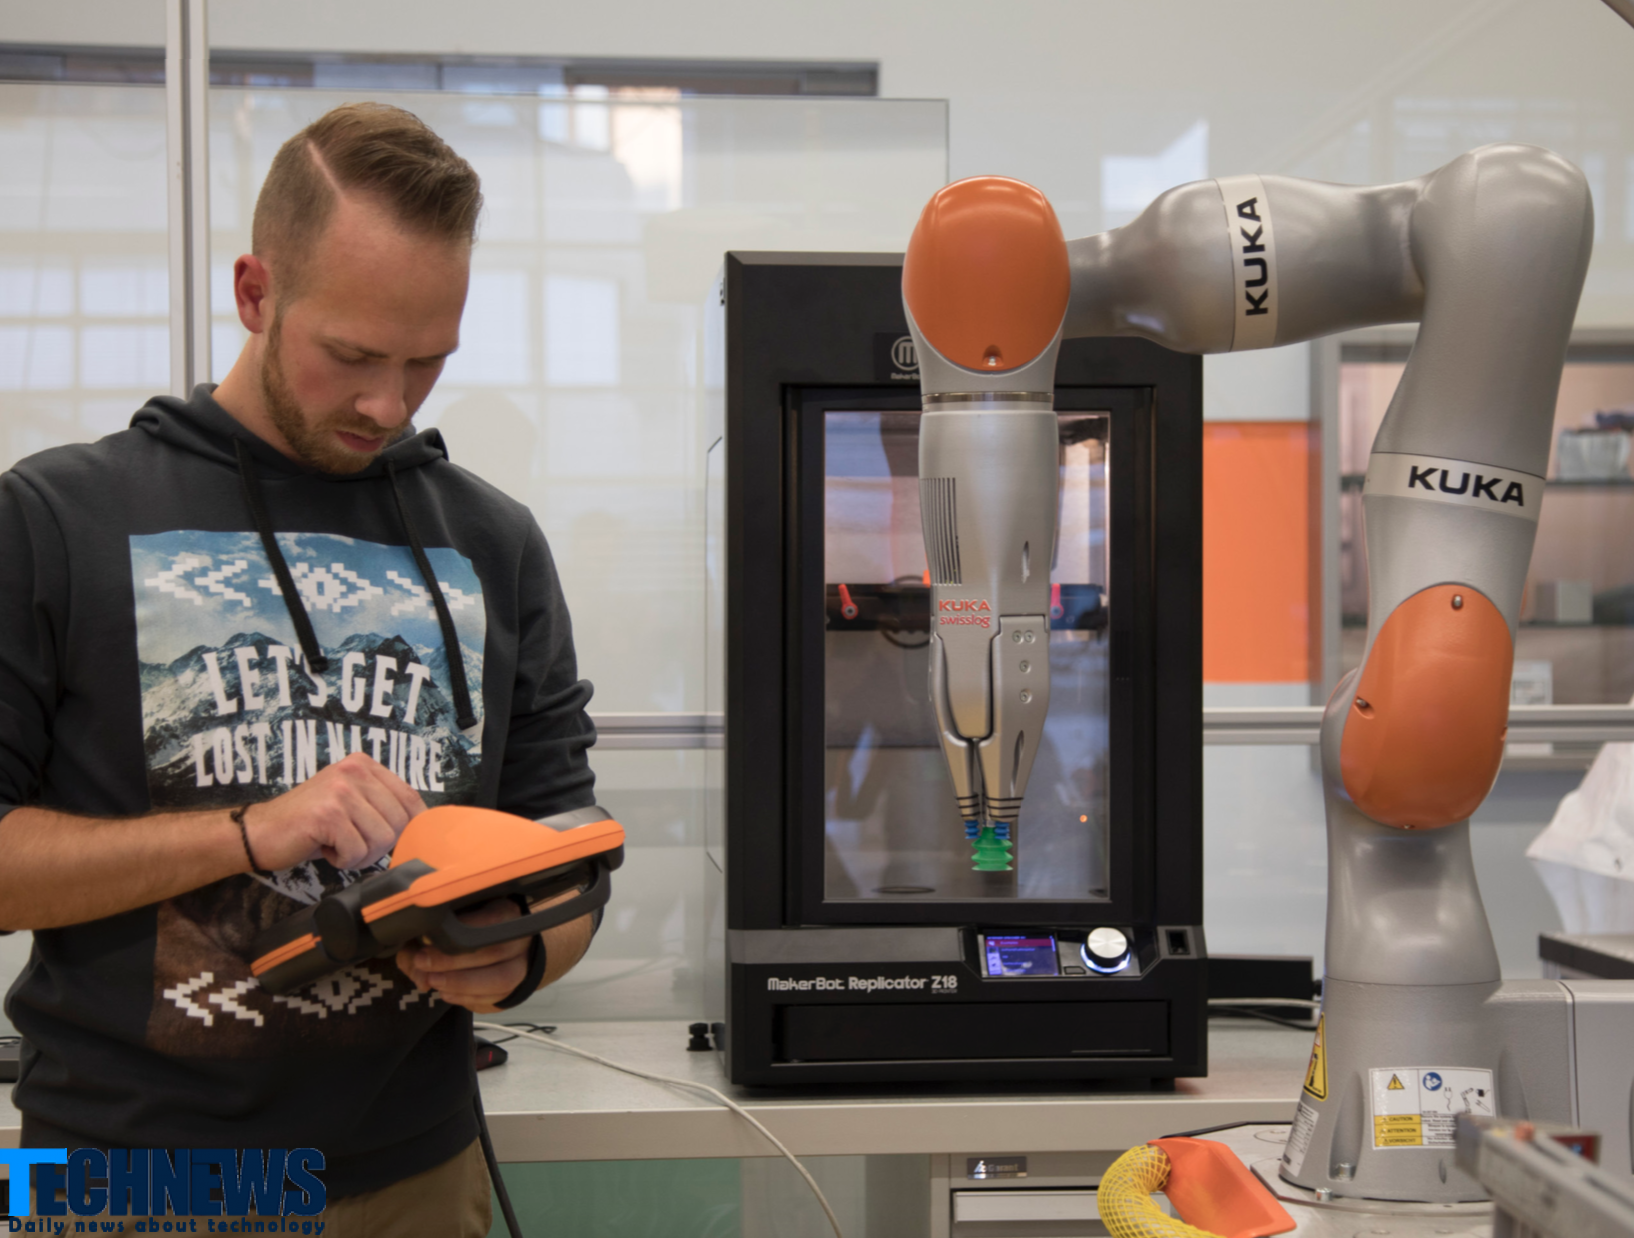 ابداع نوعی چاپگر سه بعدی با قابلیت ساخت ربات و پهپاد